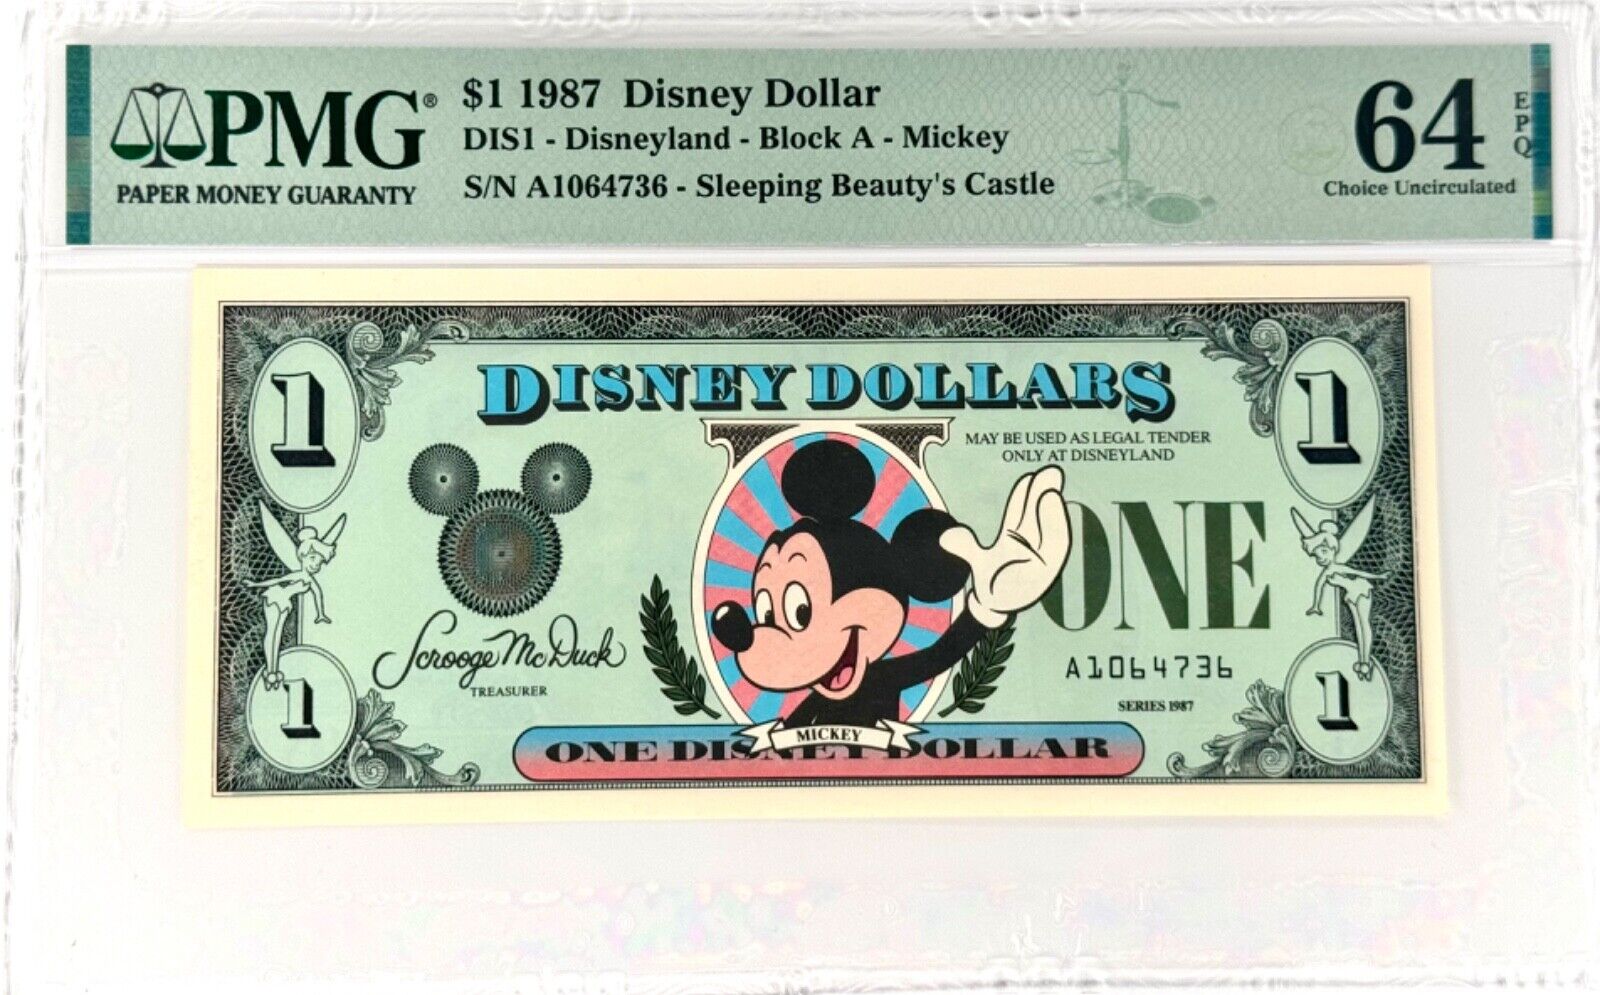 1987 $1 Disney Dollar - Waving Mickey - 1 St Run with Error PMG64 (S/N A1064736)